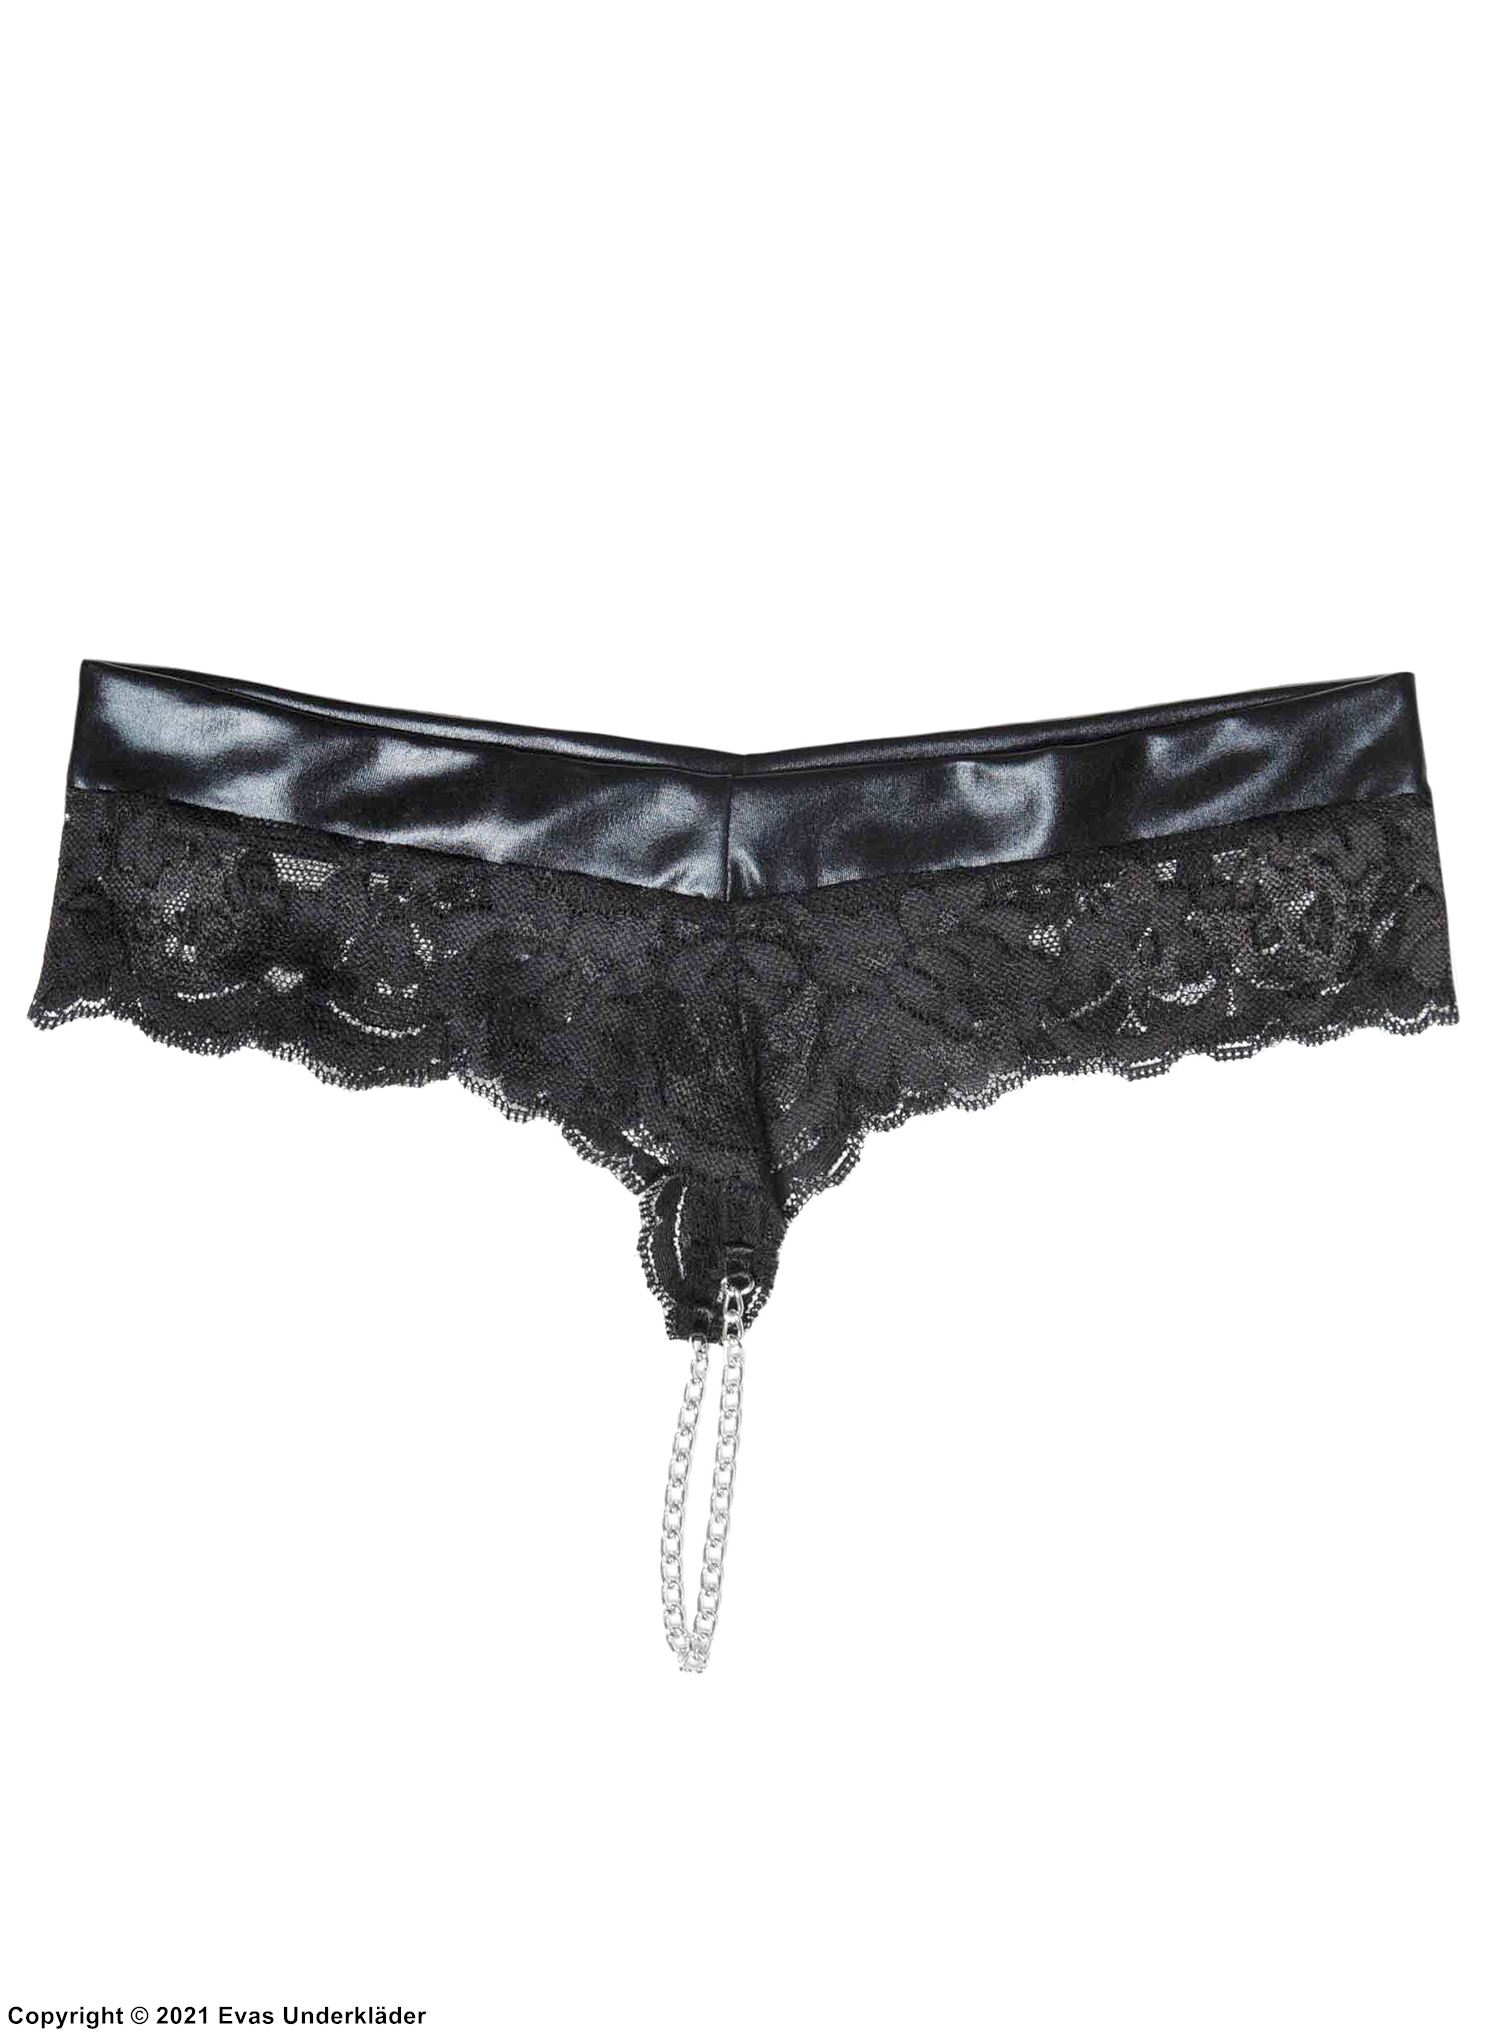 Seductive thong, wet look, floral lace, chain crotch, plus size